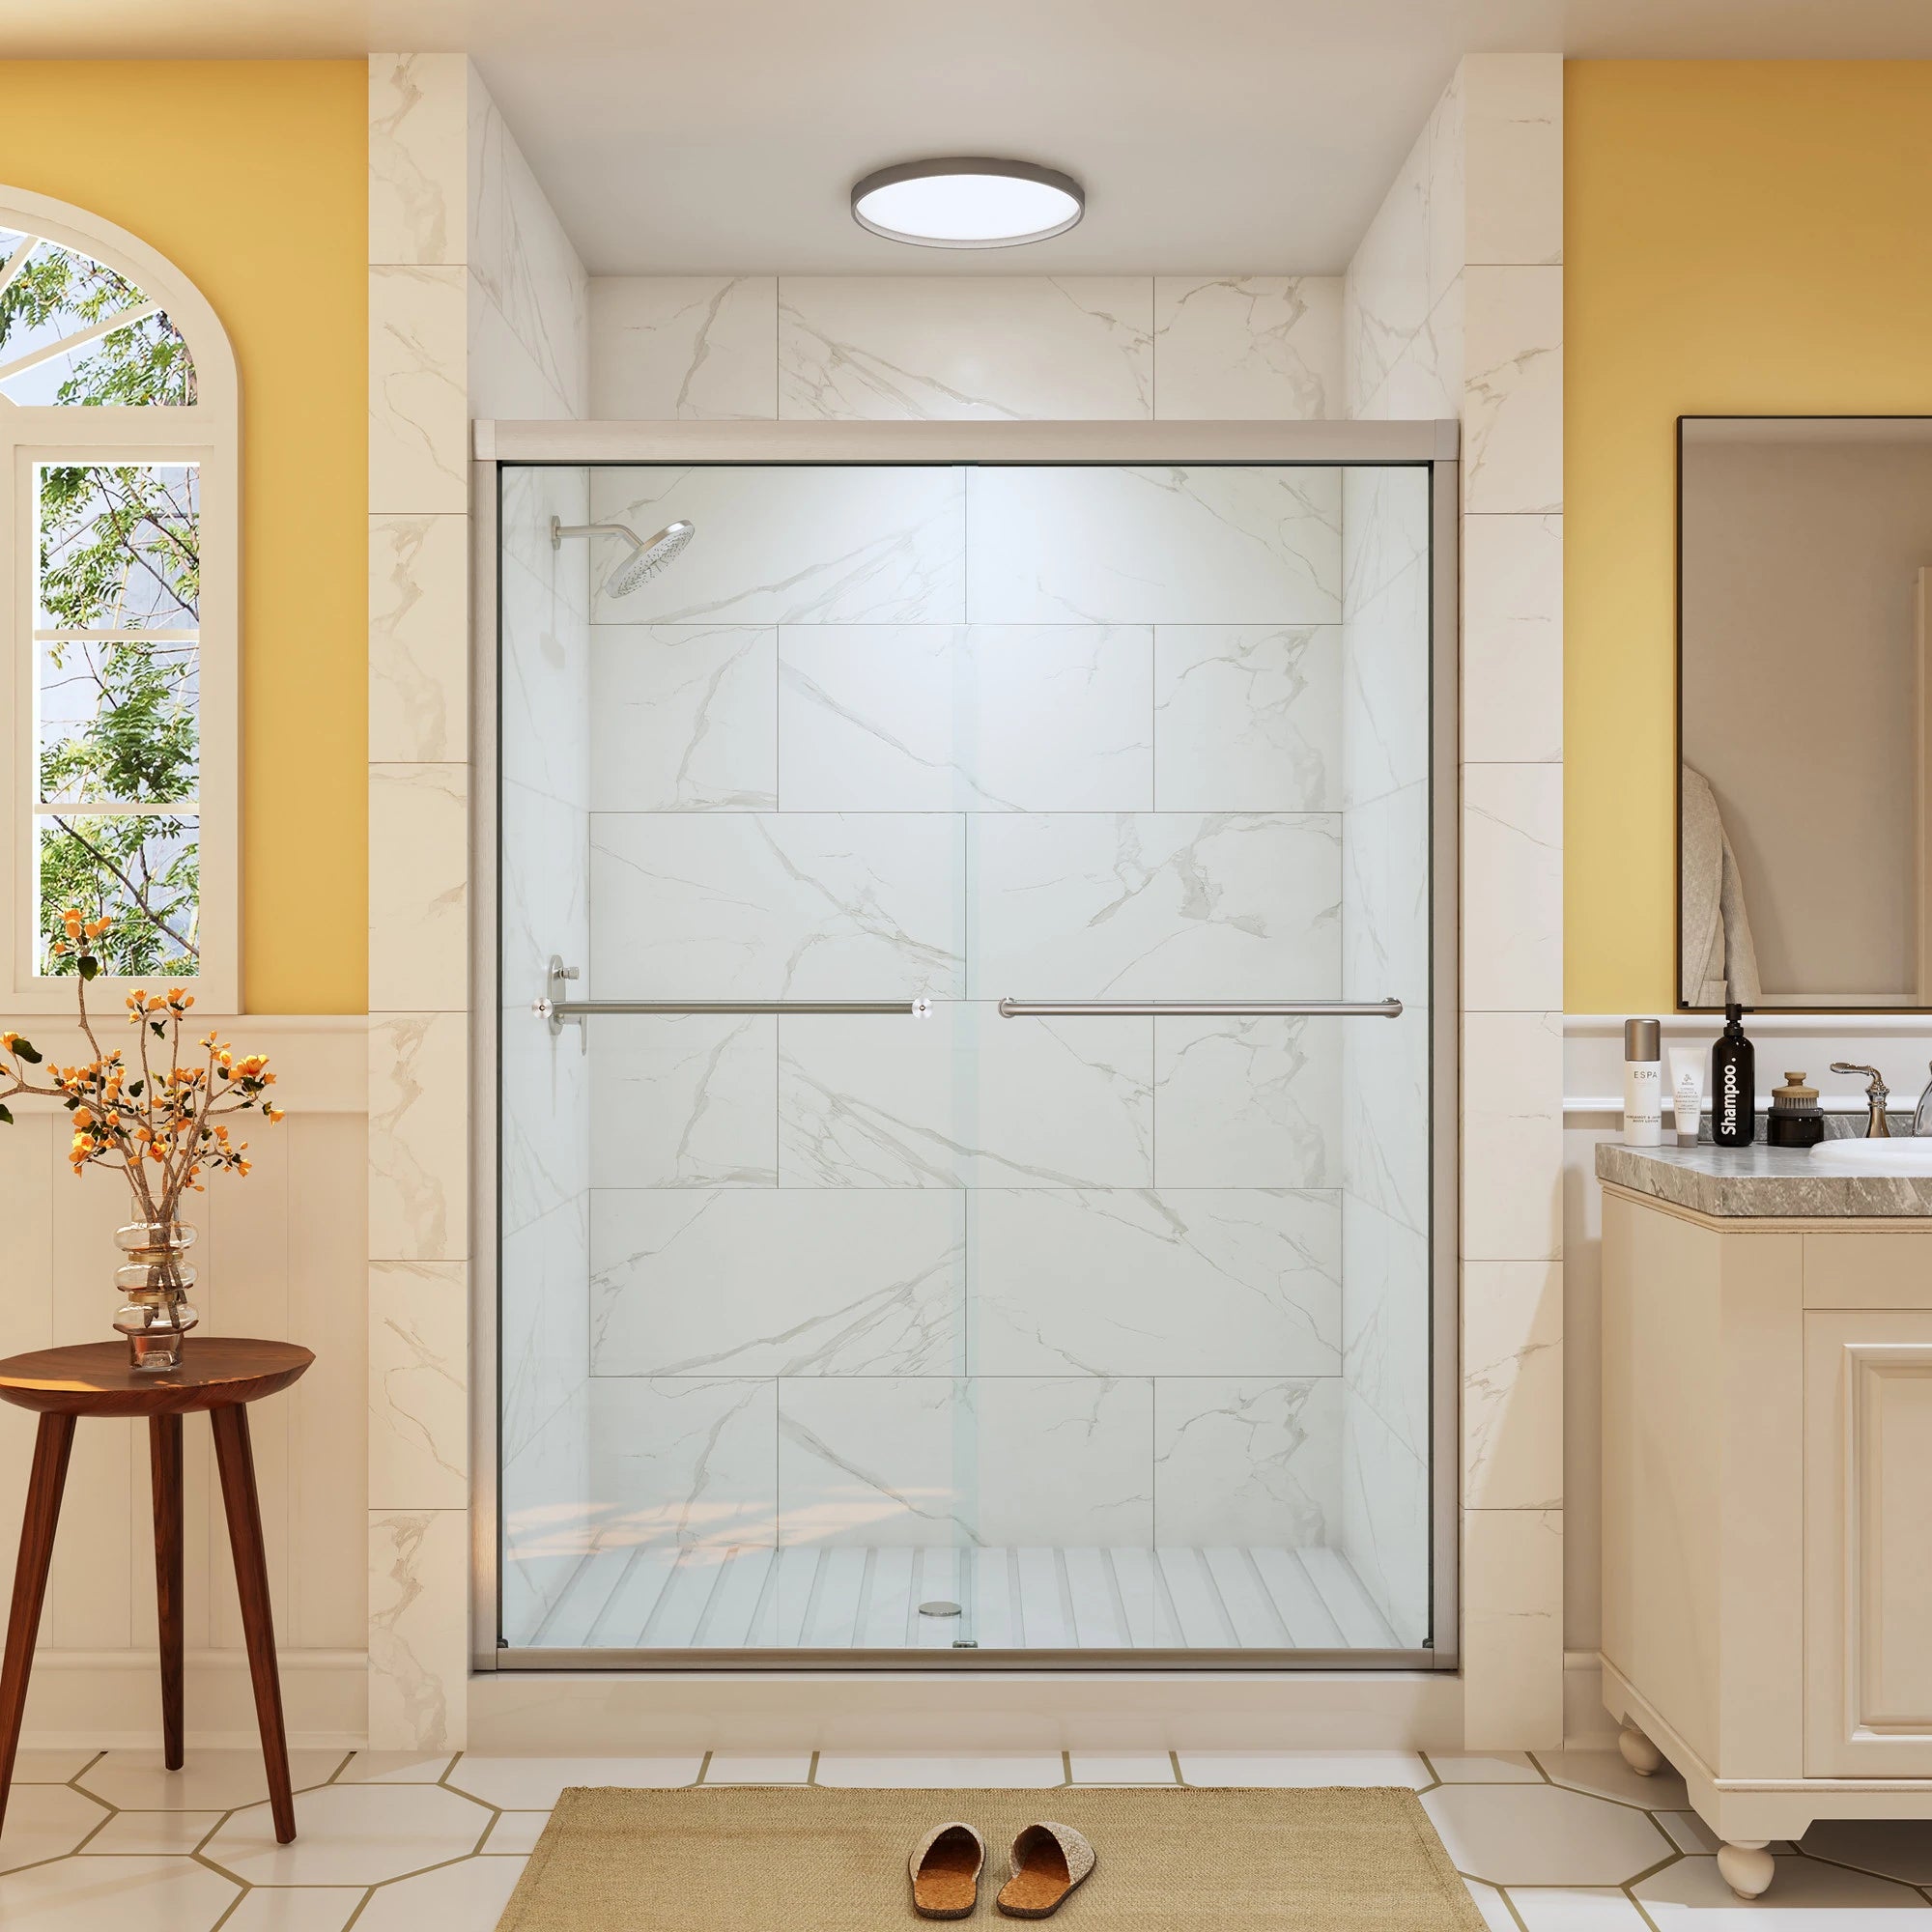 HOROW Bathroom Sliding Glass Door 60 Inch Brushed Nickel Frameless Shower Door Model BE6076-BN